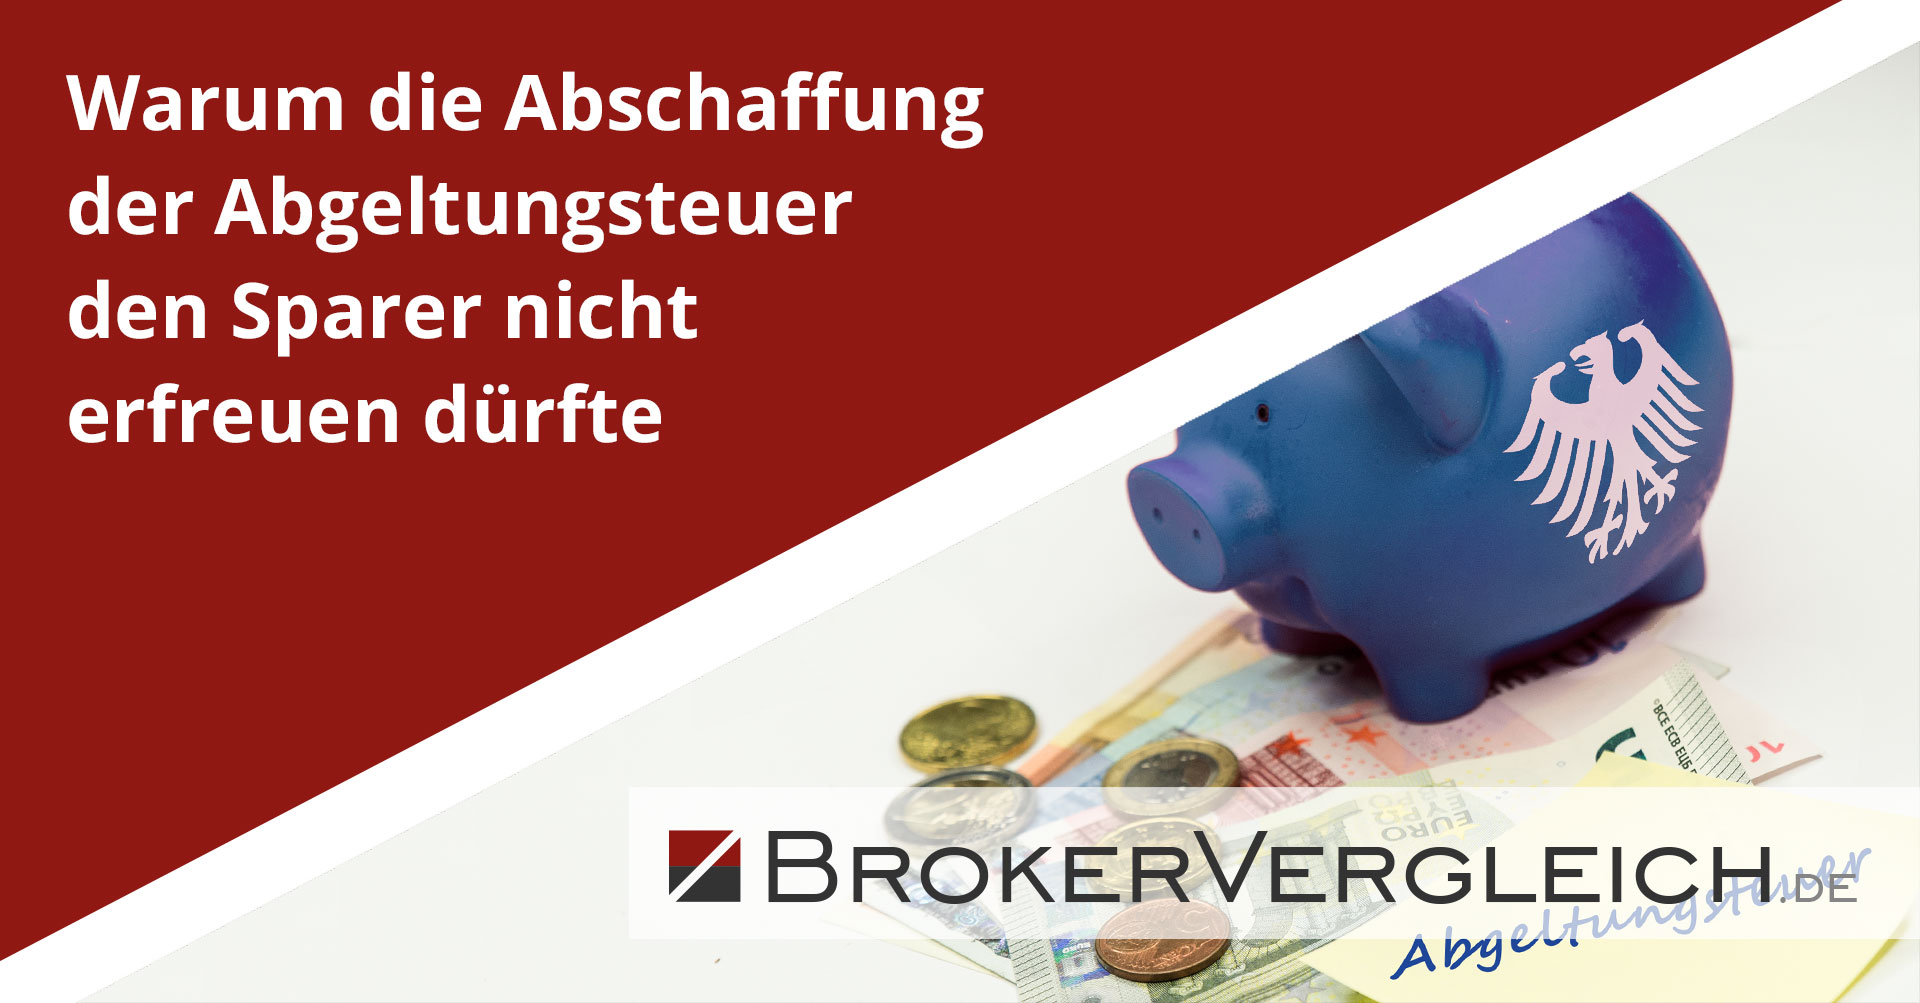 www.brokervergleich.de